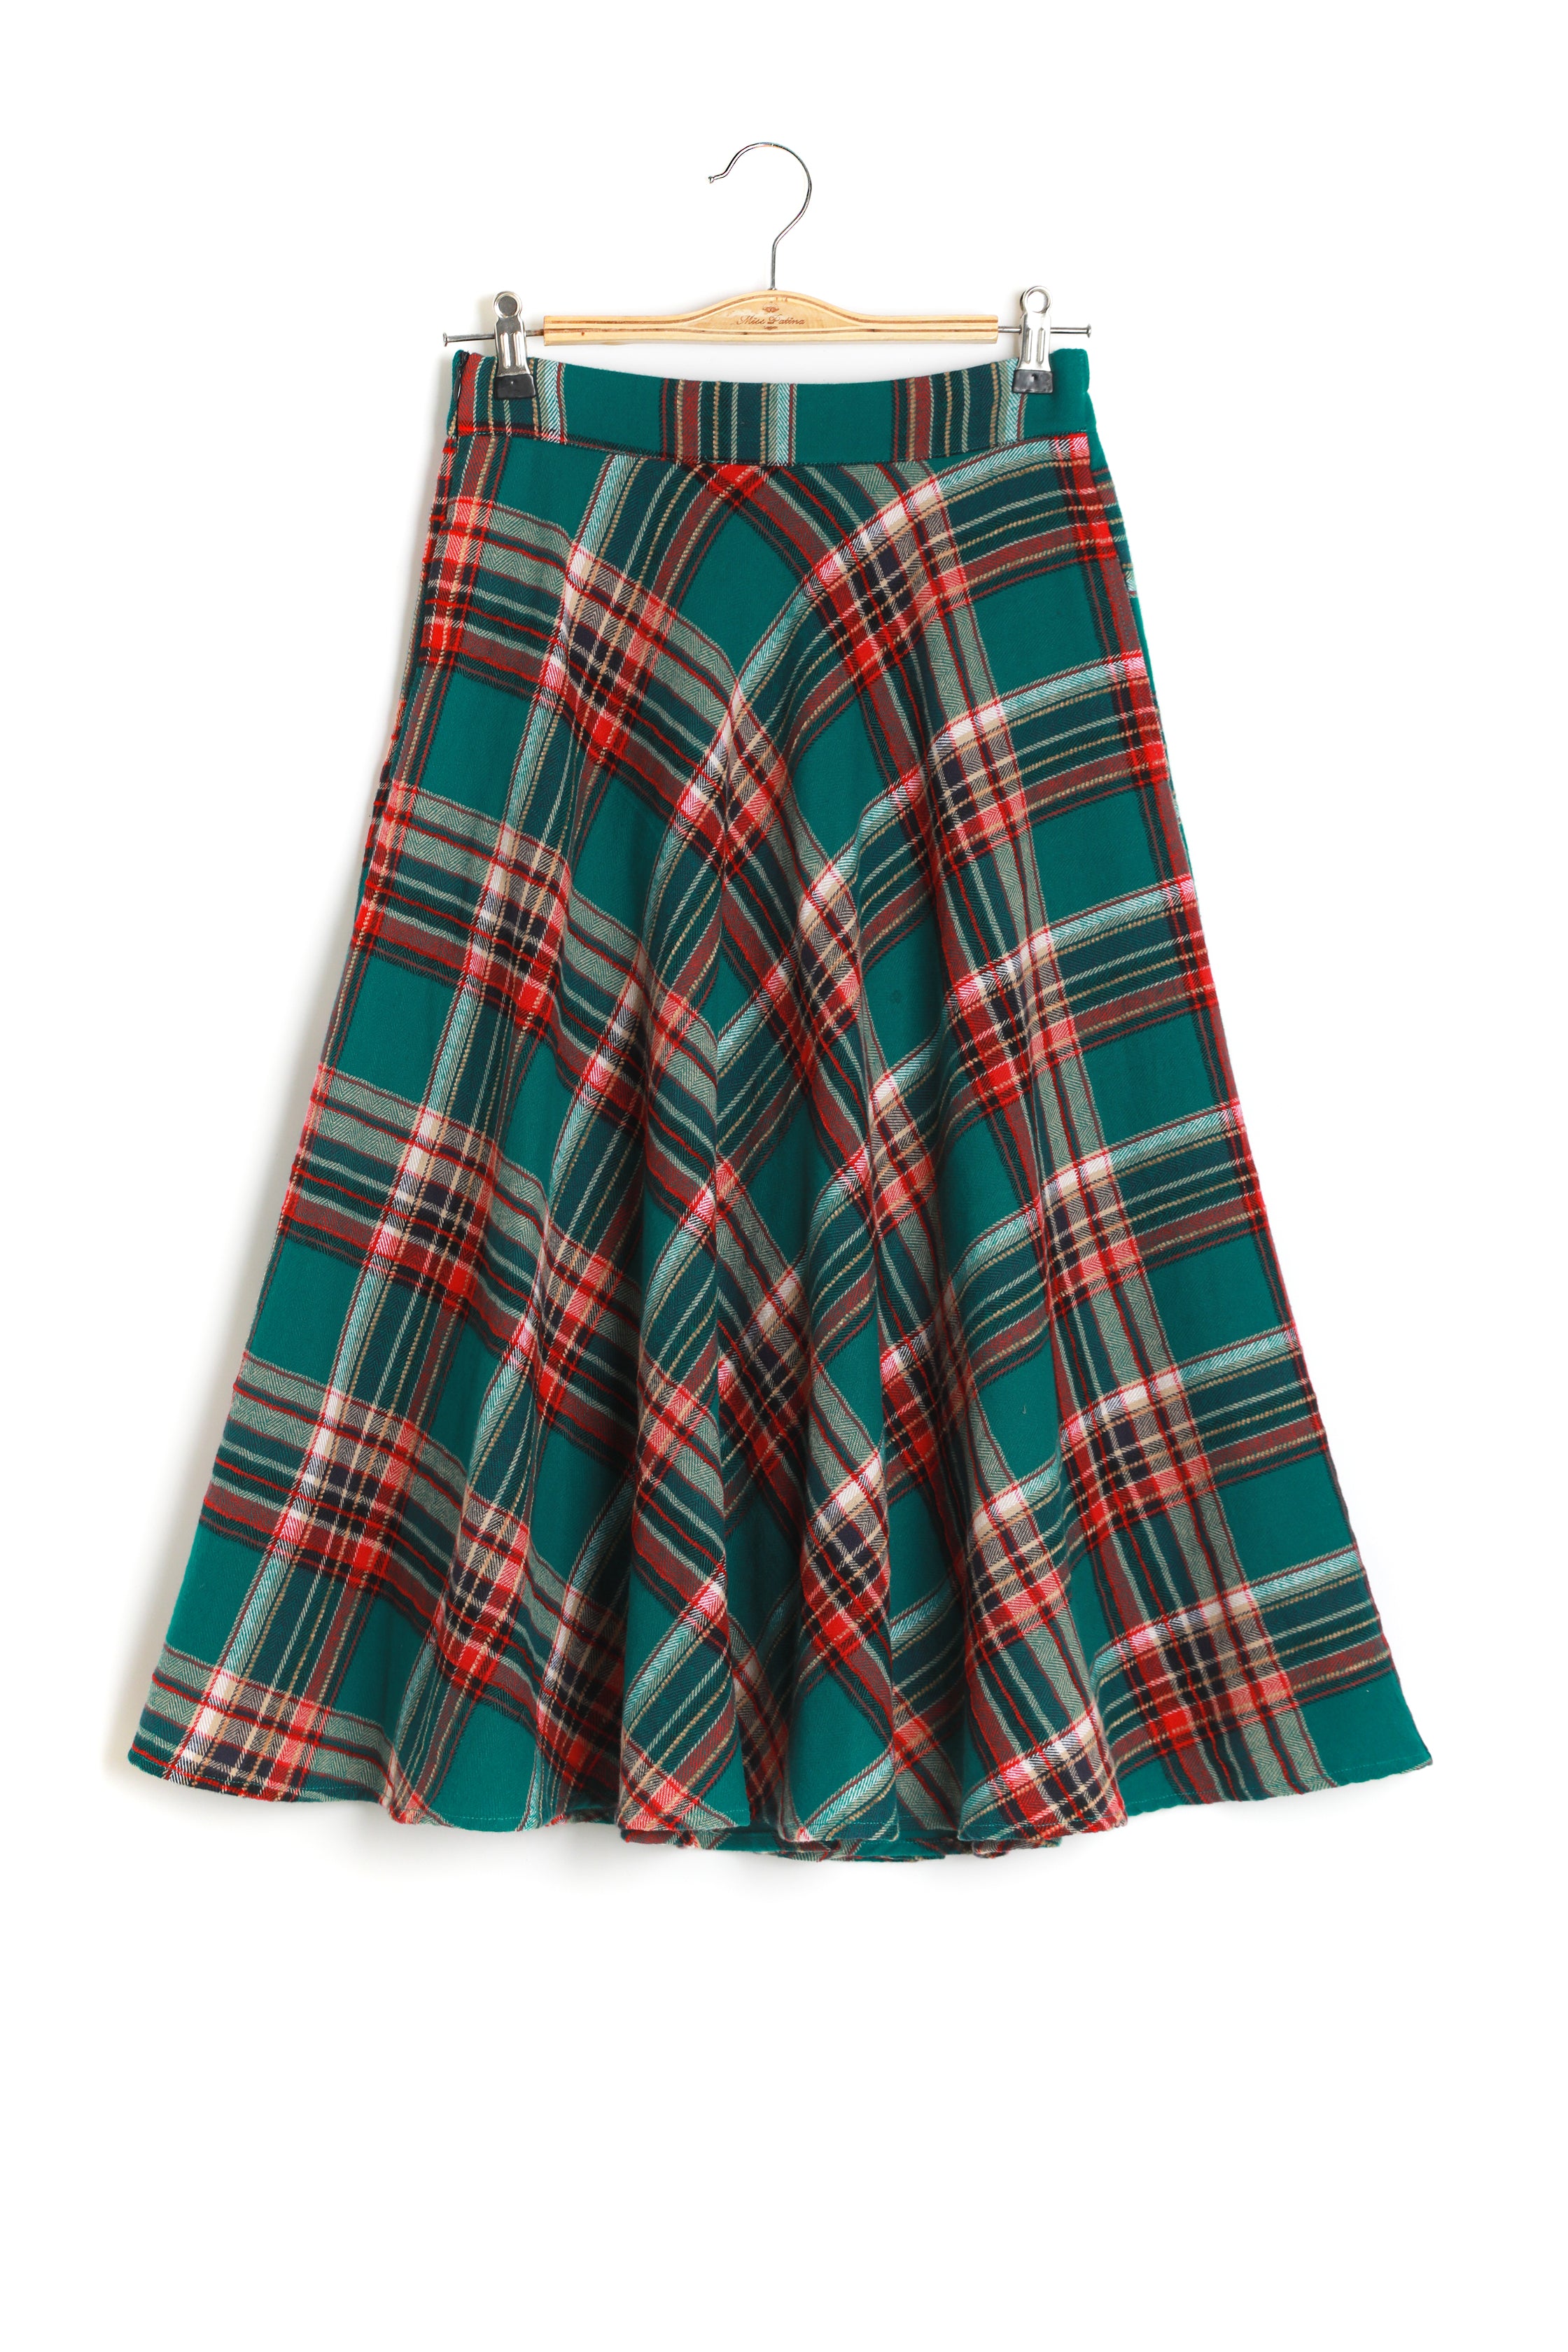 Holly Bow Jumper & Libreria Tartan Skirt (worth £160)